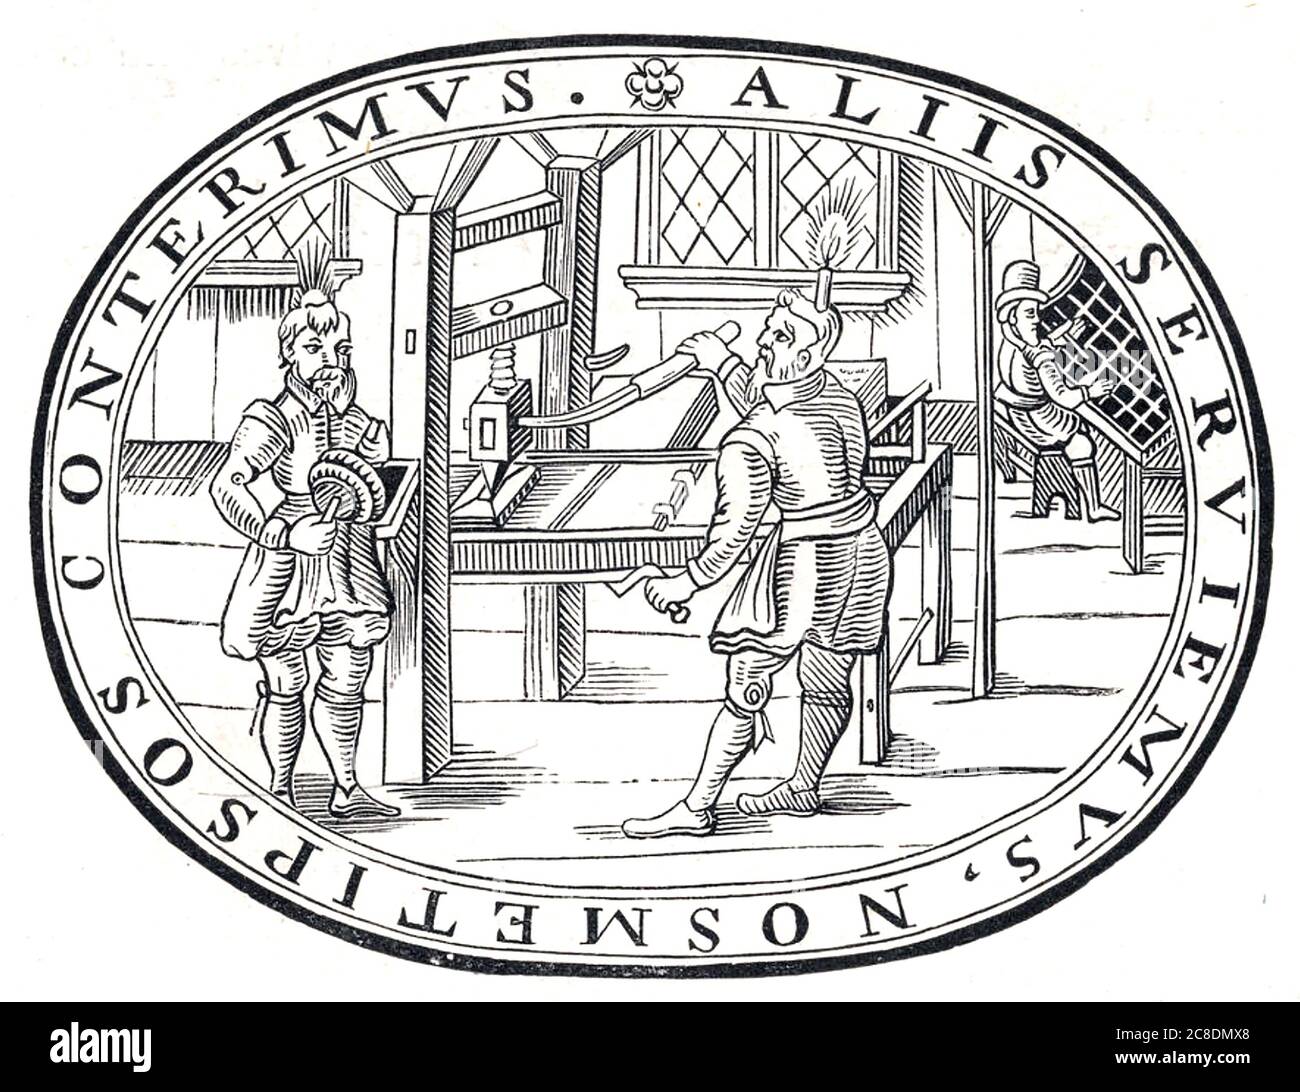 ENGLISCHE DRUCKEREI 1618. Mann sitzt oben rechts ist Sortieren beweglichen Typ. die anderen beiden Männer haben Kerzen auf ihren Köpfen, um ihre Arbeit zu beleuchten. Stockfoto